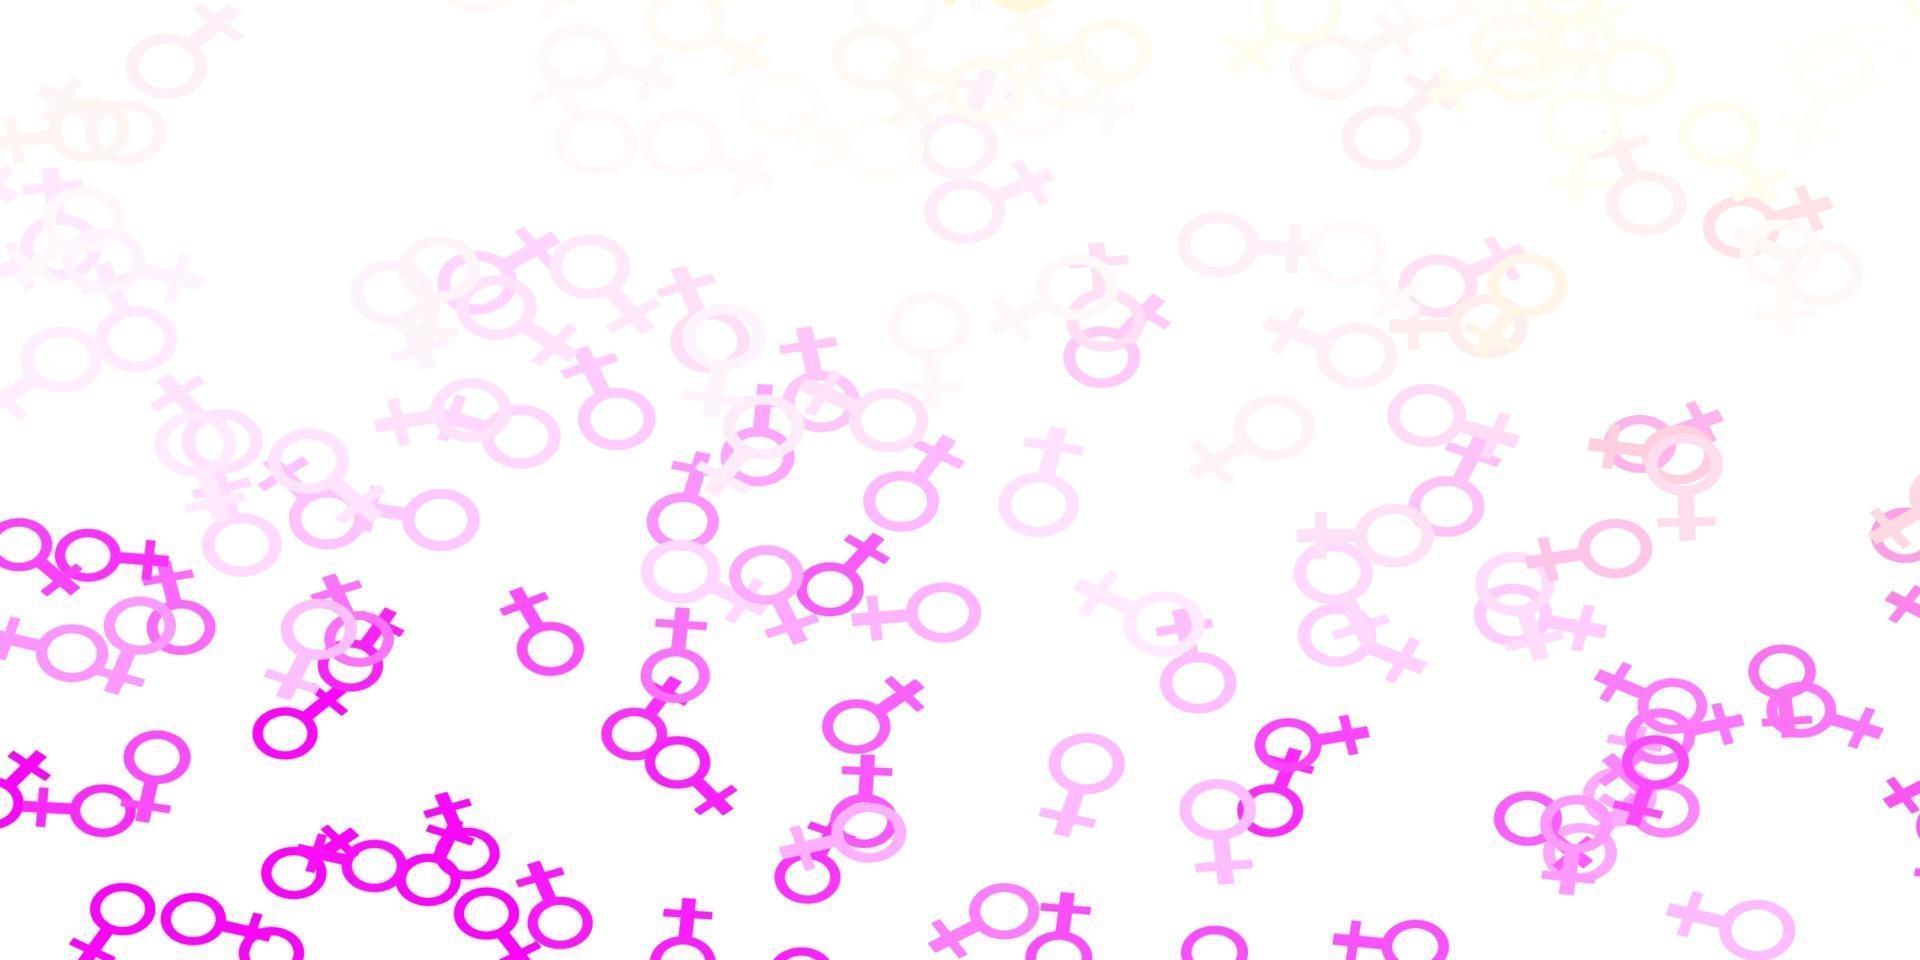 textura de vector de color rosa claro, amarillo con símbolos de derechos de las mujeres.